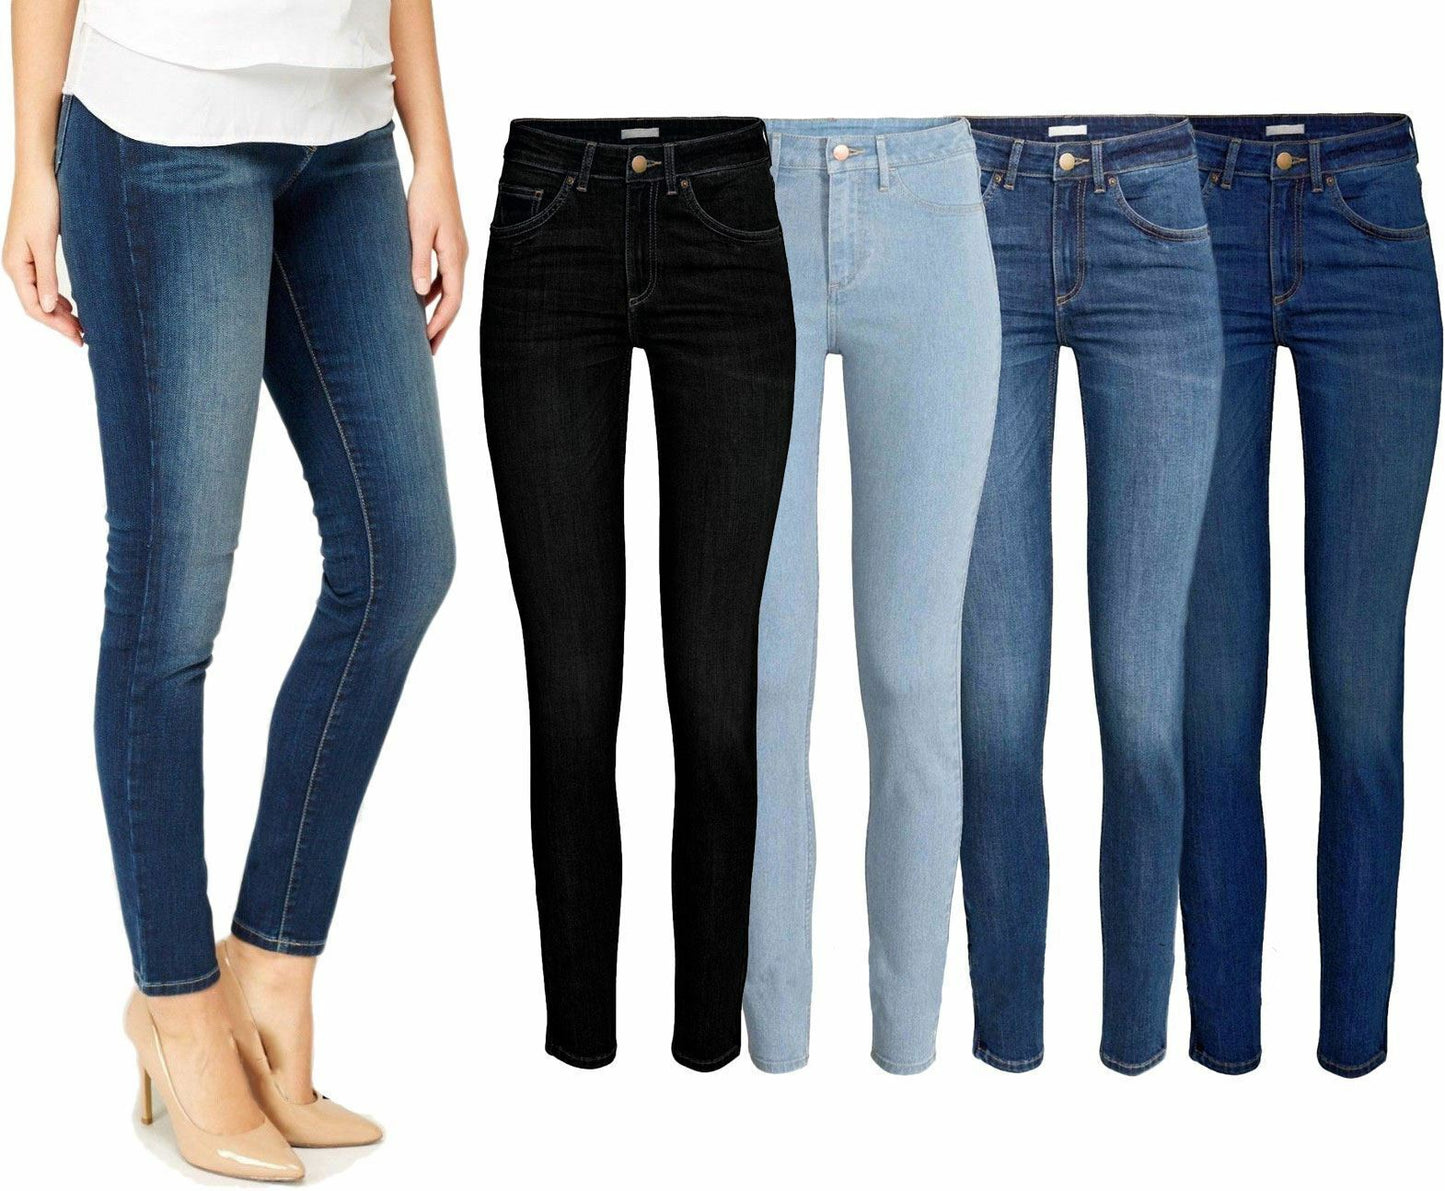 Ladies Skinny Fit Jeans.